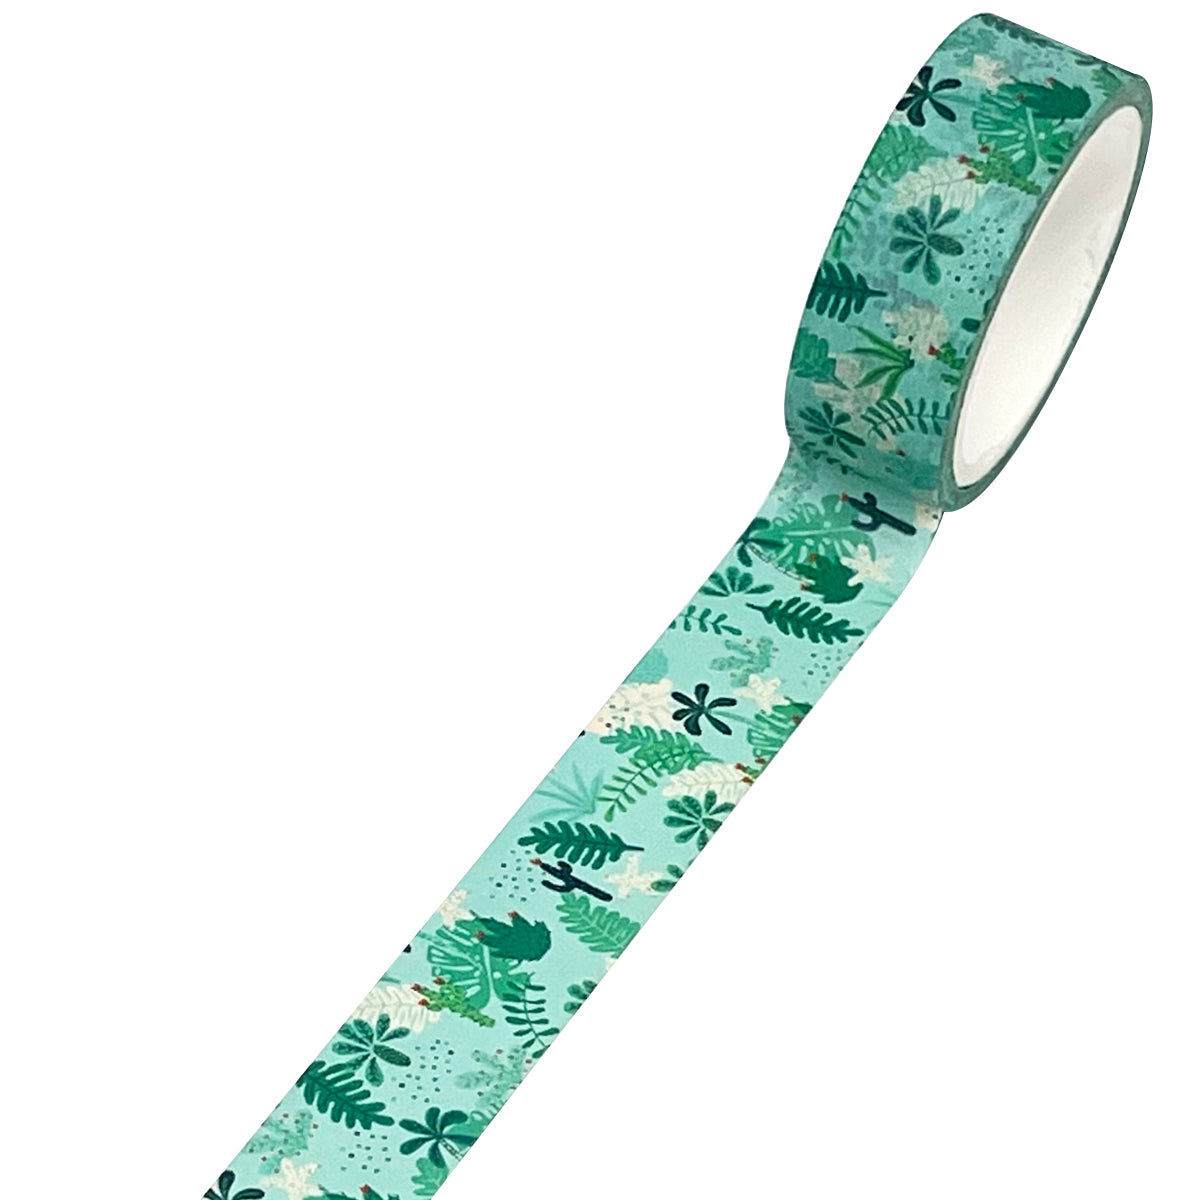 10Pcs Draping Tape Masking Tape Self-Adhesive Dress Green 